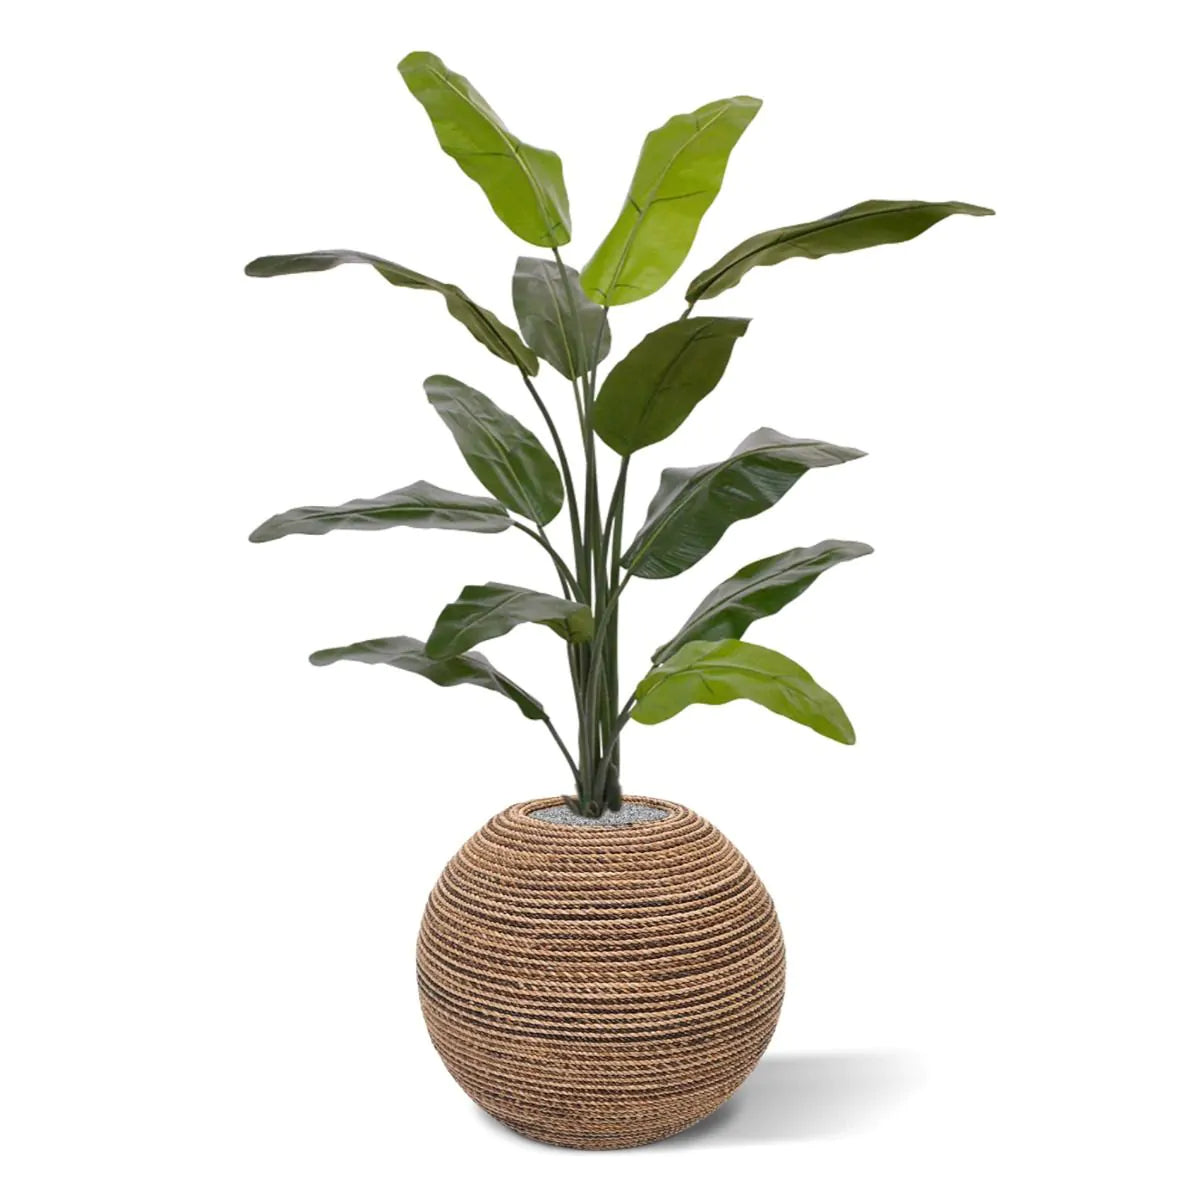 Pflanzenglanz® Künstliche Traveller Palme (Baum der Reisenden) 130 cm